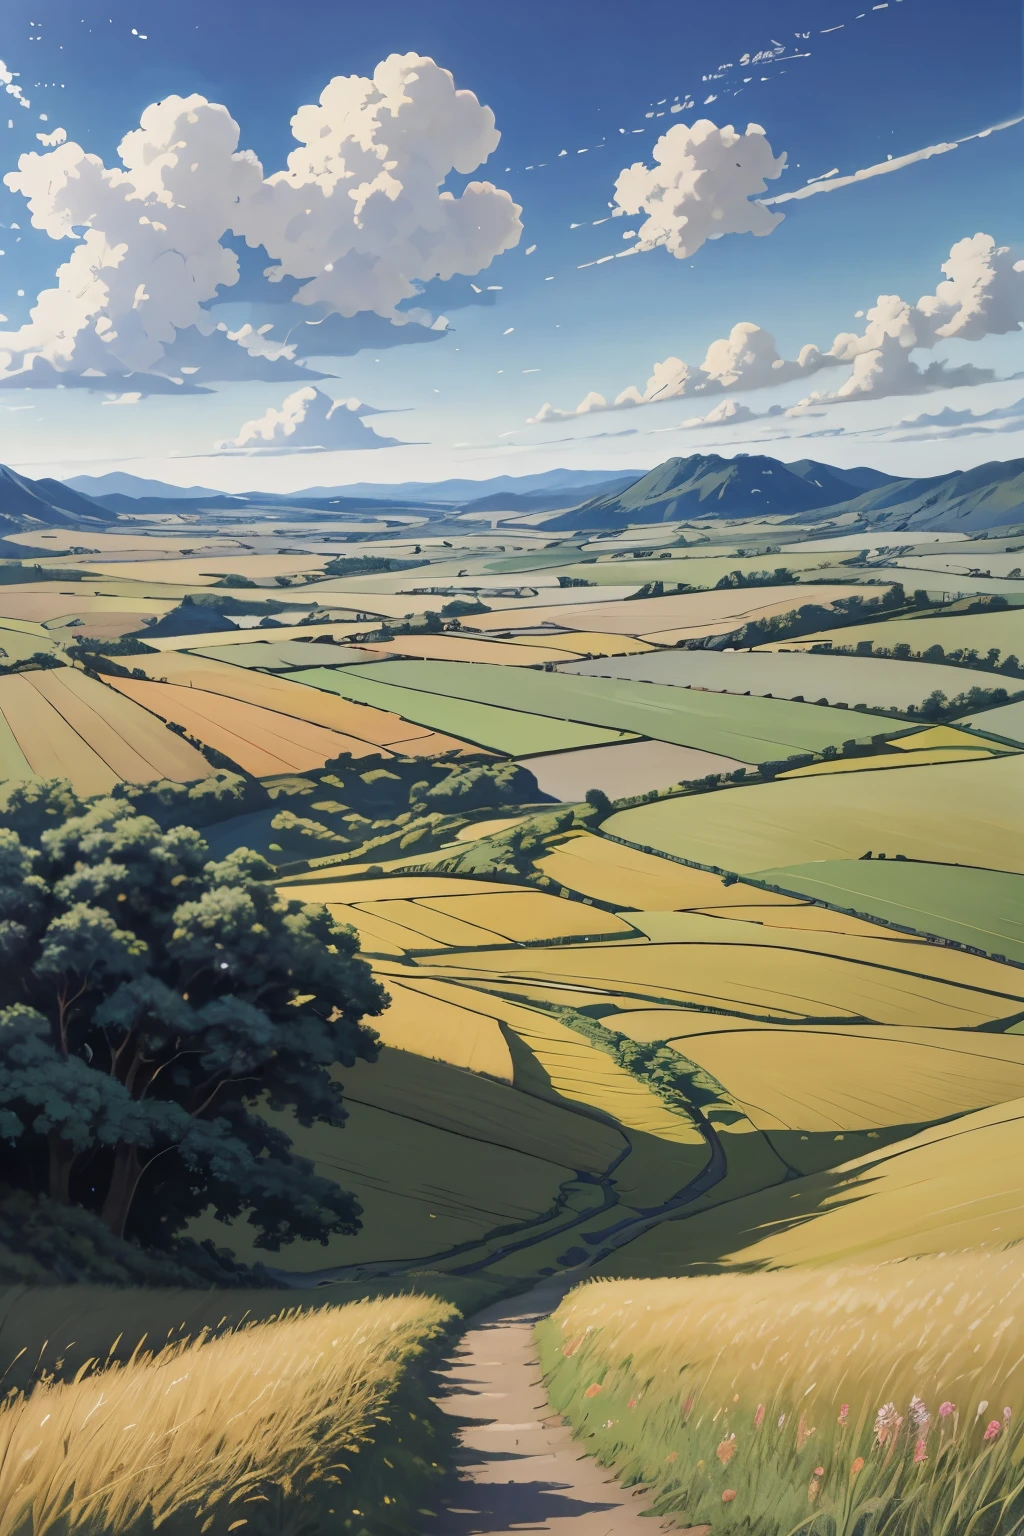 réaliste, Réel, belle et superbe peinture à l&#39;huile de paysage Studio Ghibli Hayao Miyazaki Pétales Prairie Ciel Bleu Prairie Route de campagne,bâtiment, 